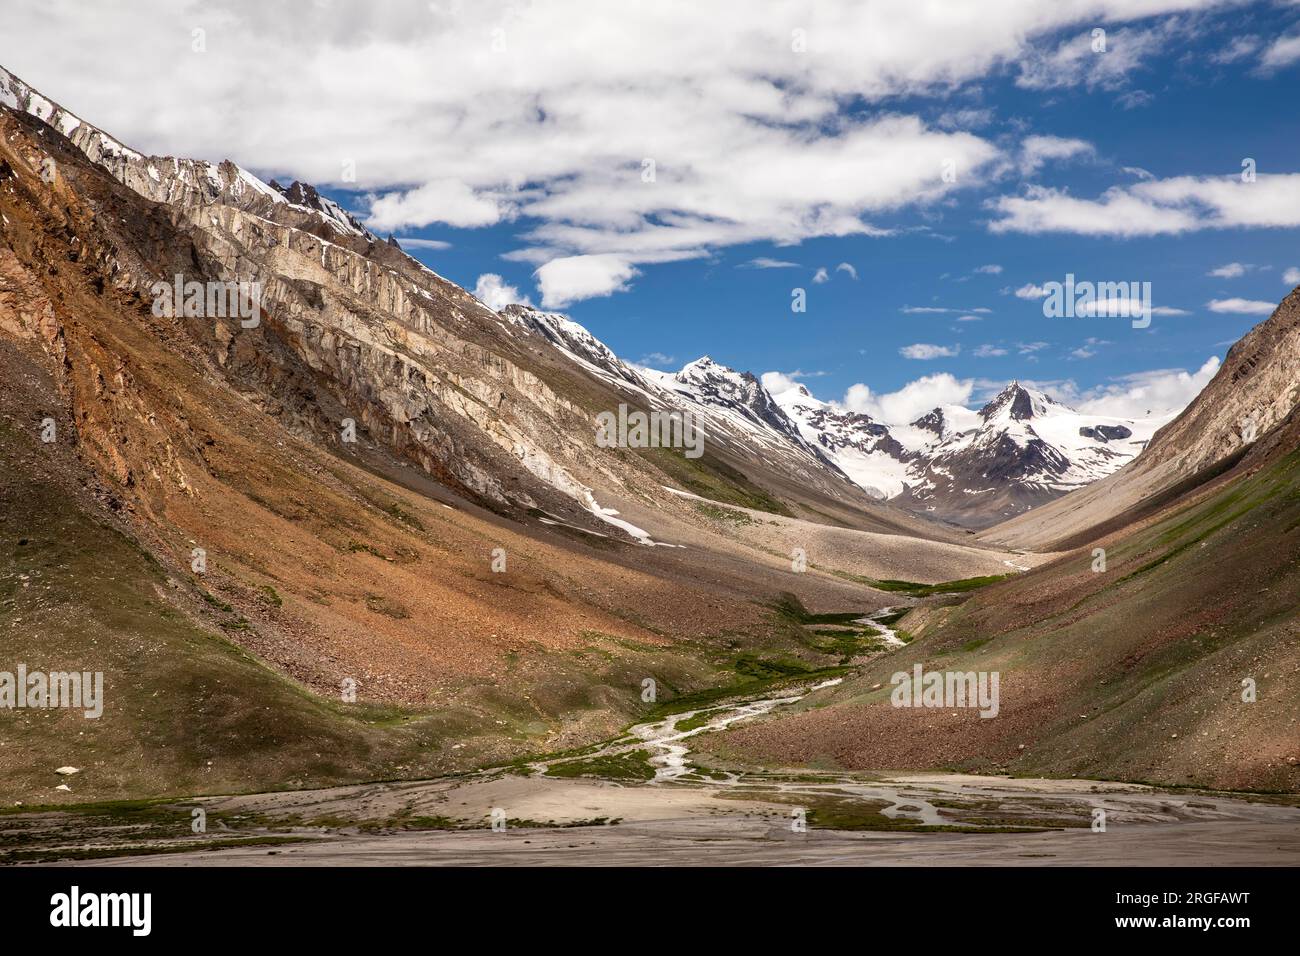 Indien, Ladakh, Zanskar, Pensi La, Schmelzwasserstrom von schneebedeckten Gipfeln des 14.436’ Penzila-Passes, Stockfoto